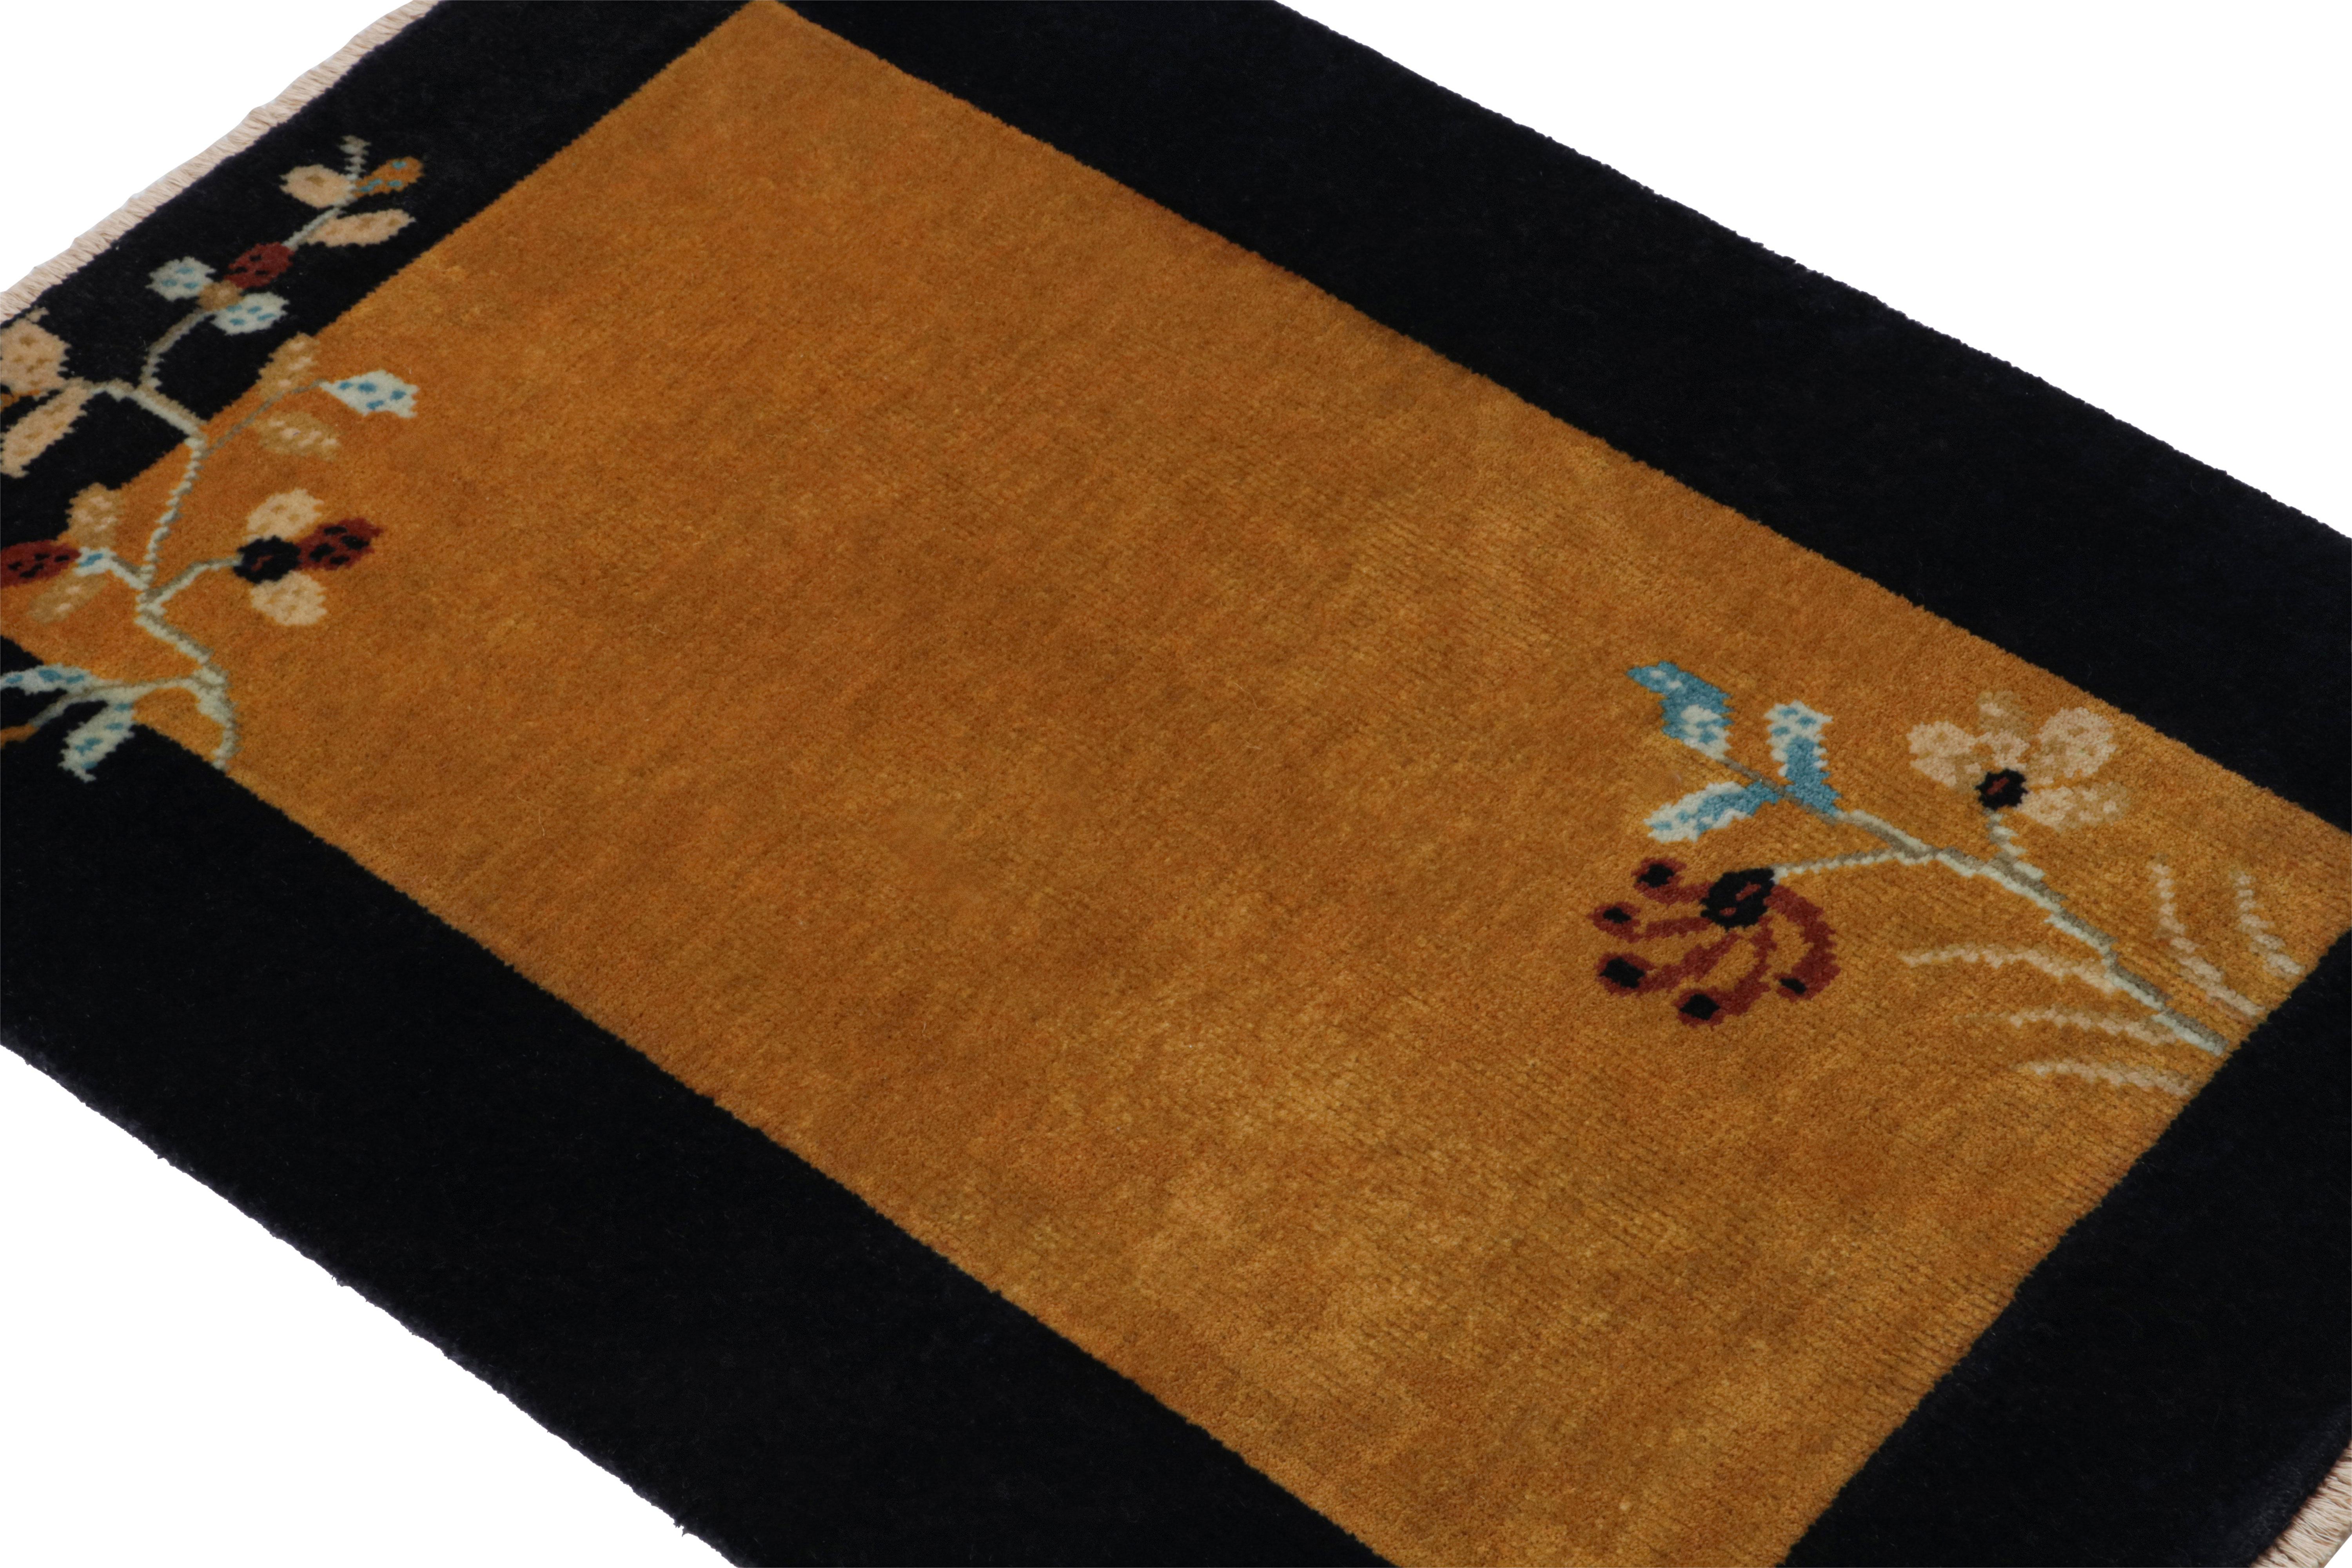 Dieser handgeknüpfte Wollteppich (2x3) von Rug & Kilim ist eine Neuheit in der Reihe der chinesischen Art-Deco-Teppiche.

Über das Design: 

Dieses besondere Stück zeigt einen minimalistischeren Ansatz für den Chinoiserie-Stil der 1920er Jahre, mit